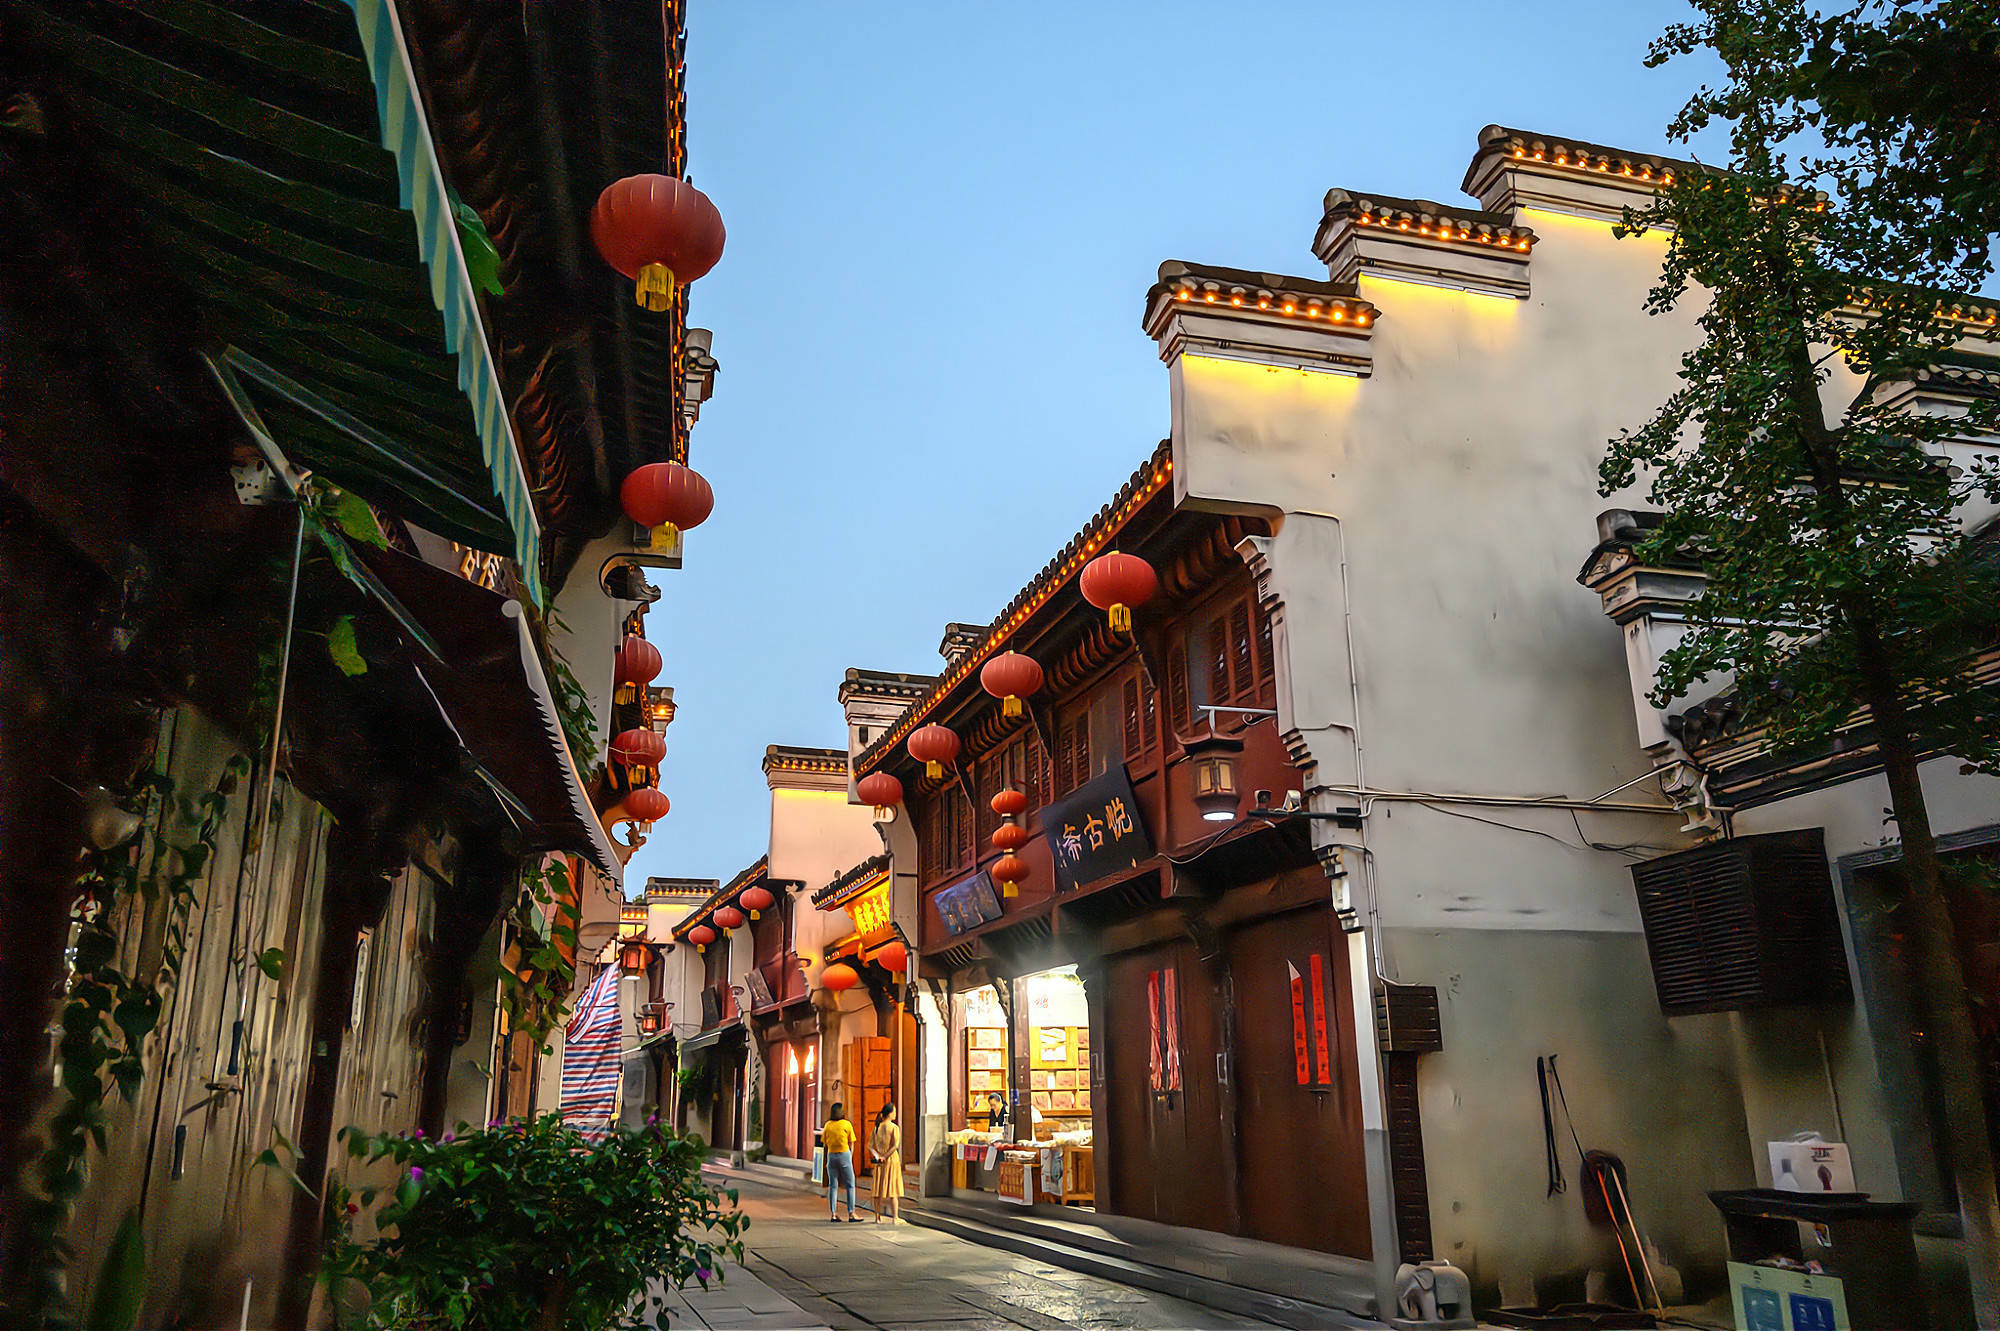 原创南京这条老街被誉为金陵第一古街中国历史文化名街之一